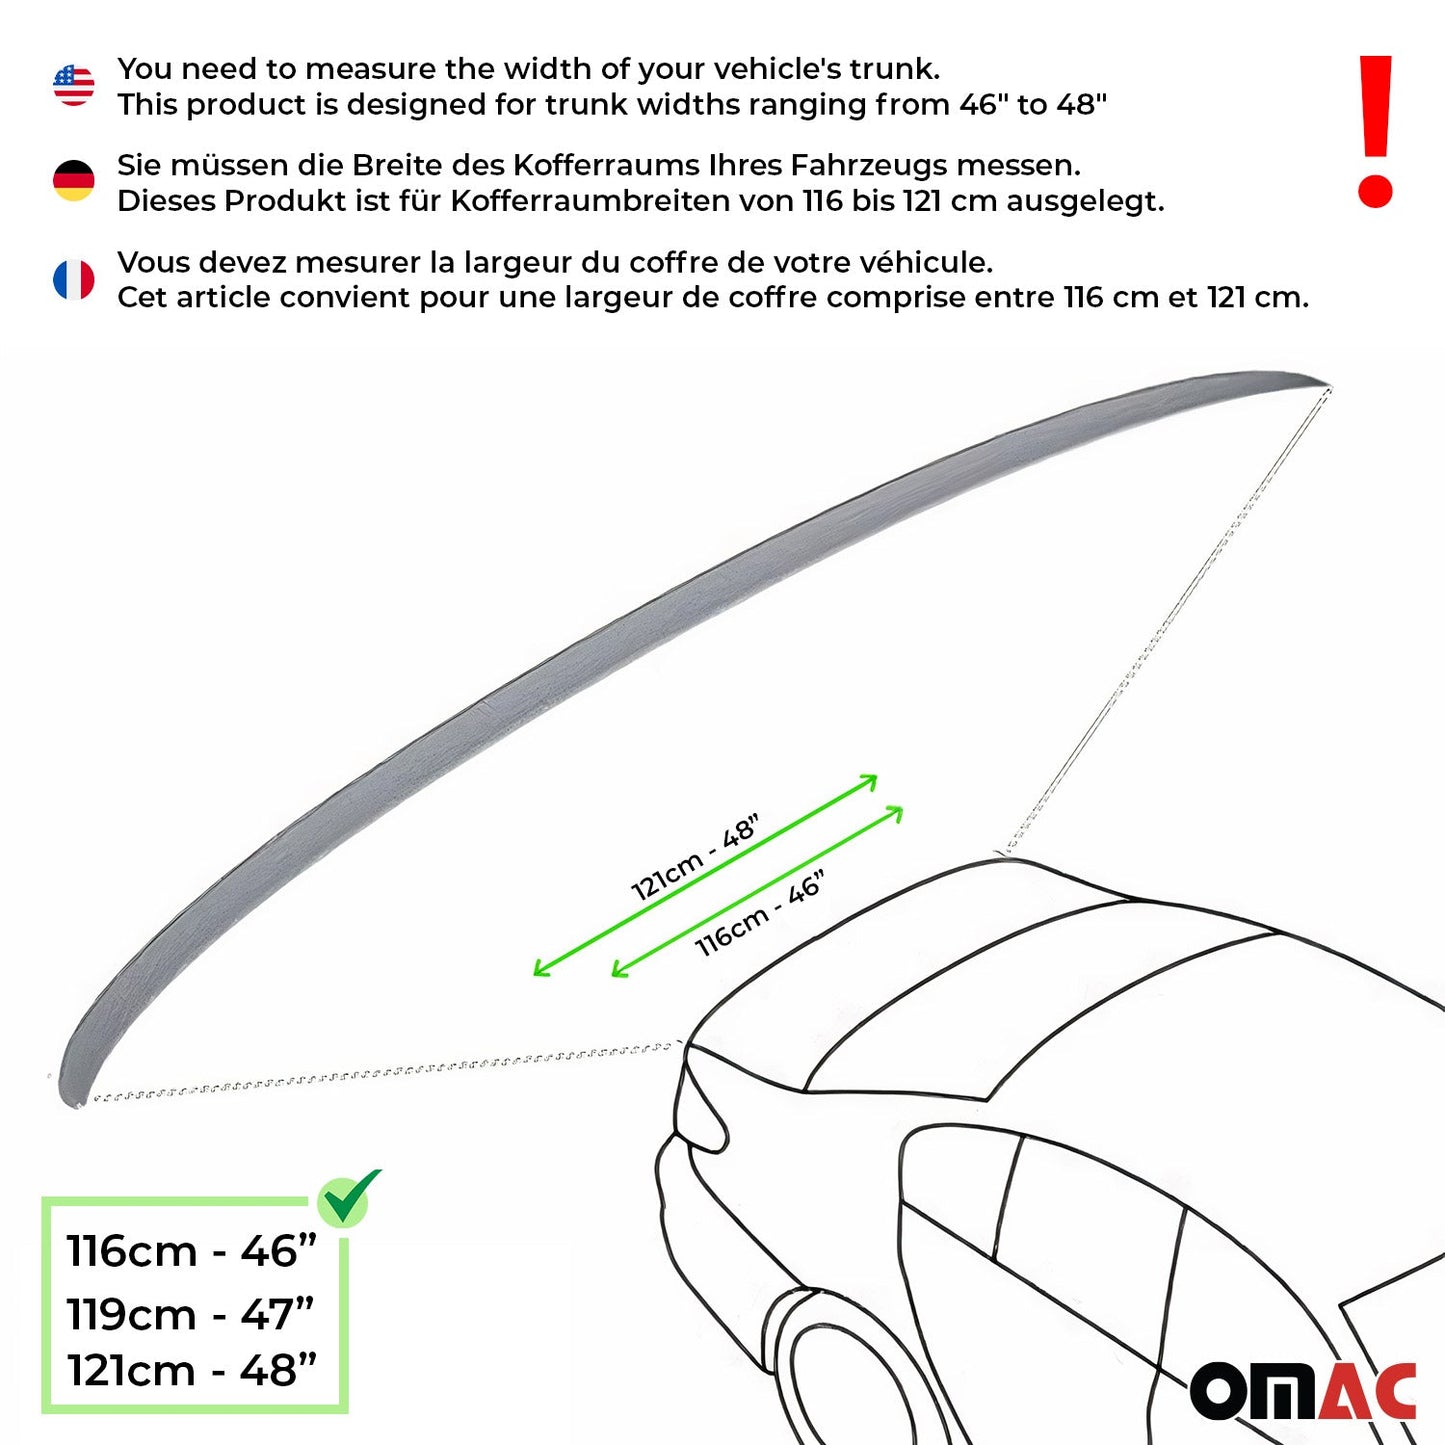 OMAC Rear Trunk Spoiler Wing for VW Jetta A6 2015-2018 Black 1 Pc 96PLS501-115B